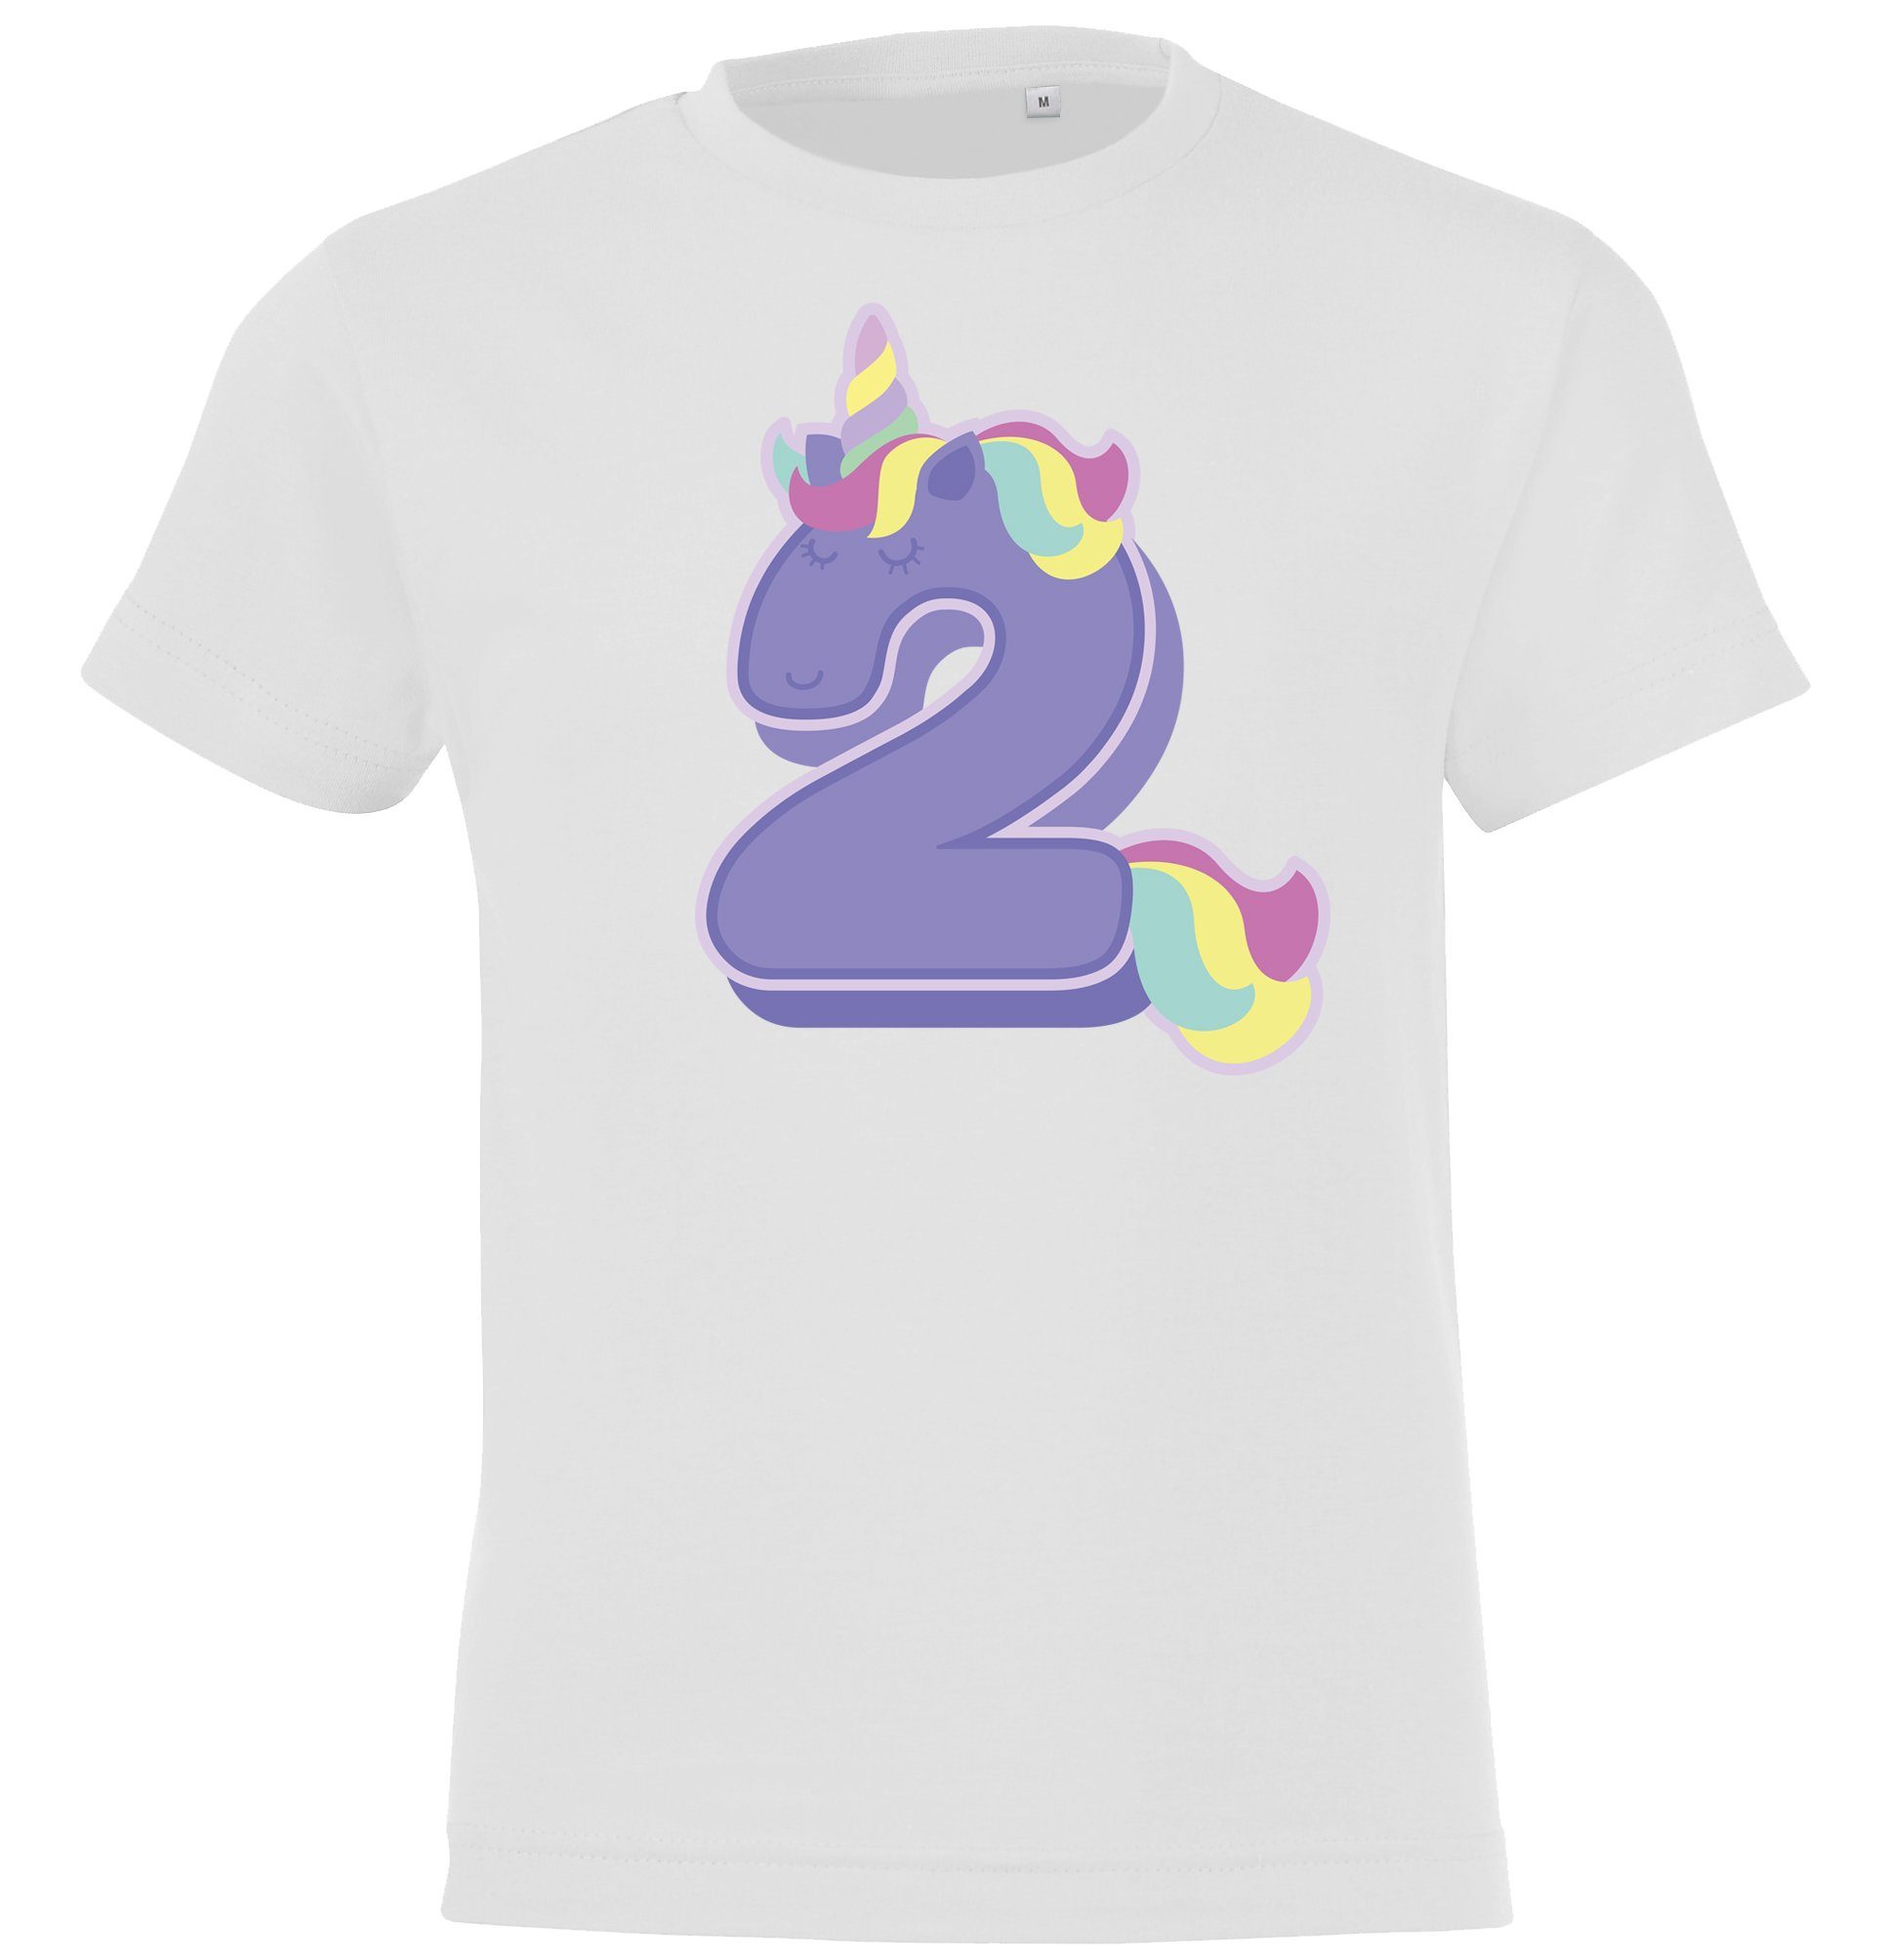 Designz Youth T-Shirt süßem 2 für Frontprint mit Geburtstag Weiß Jahre Mädchen T-Shirt